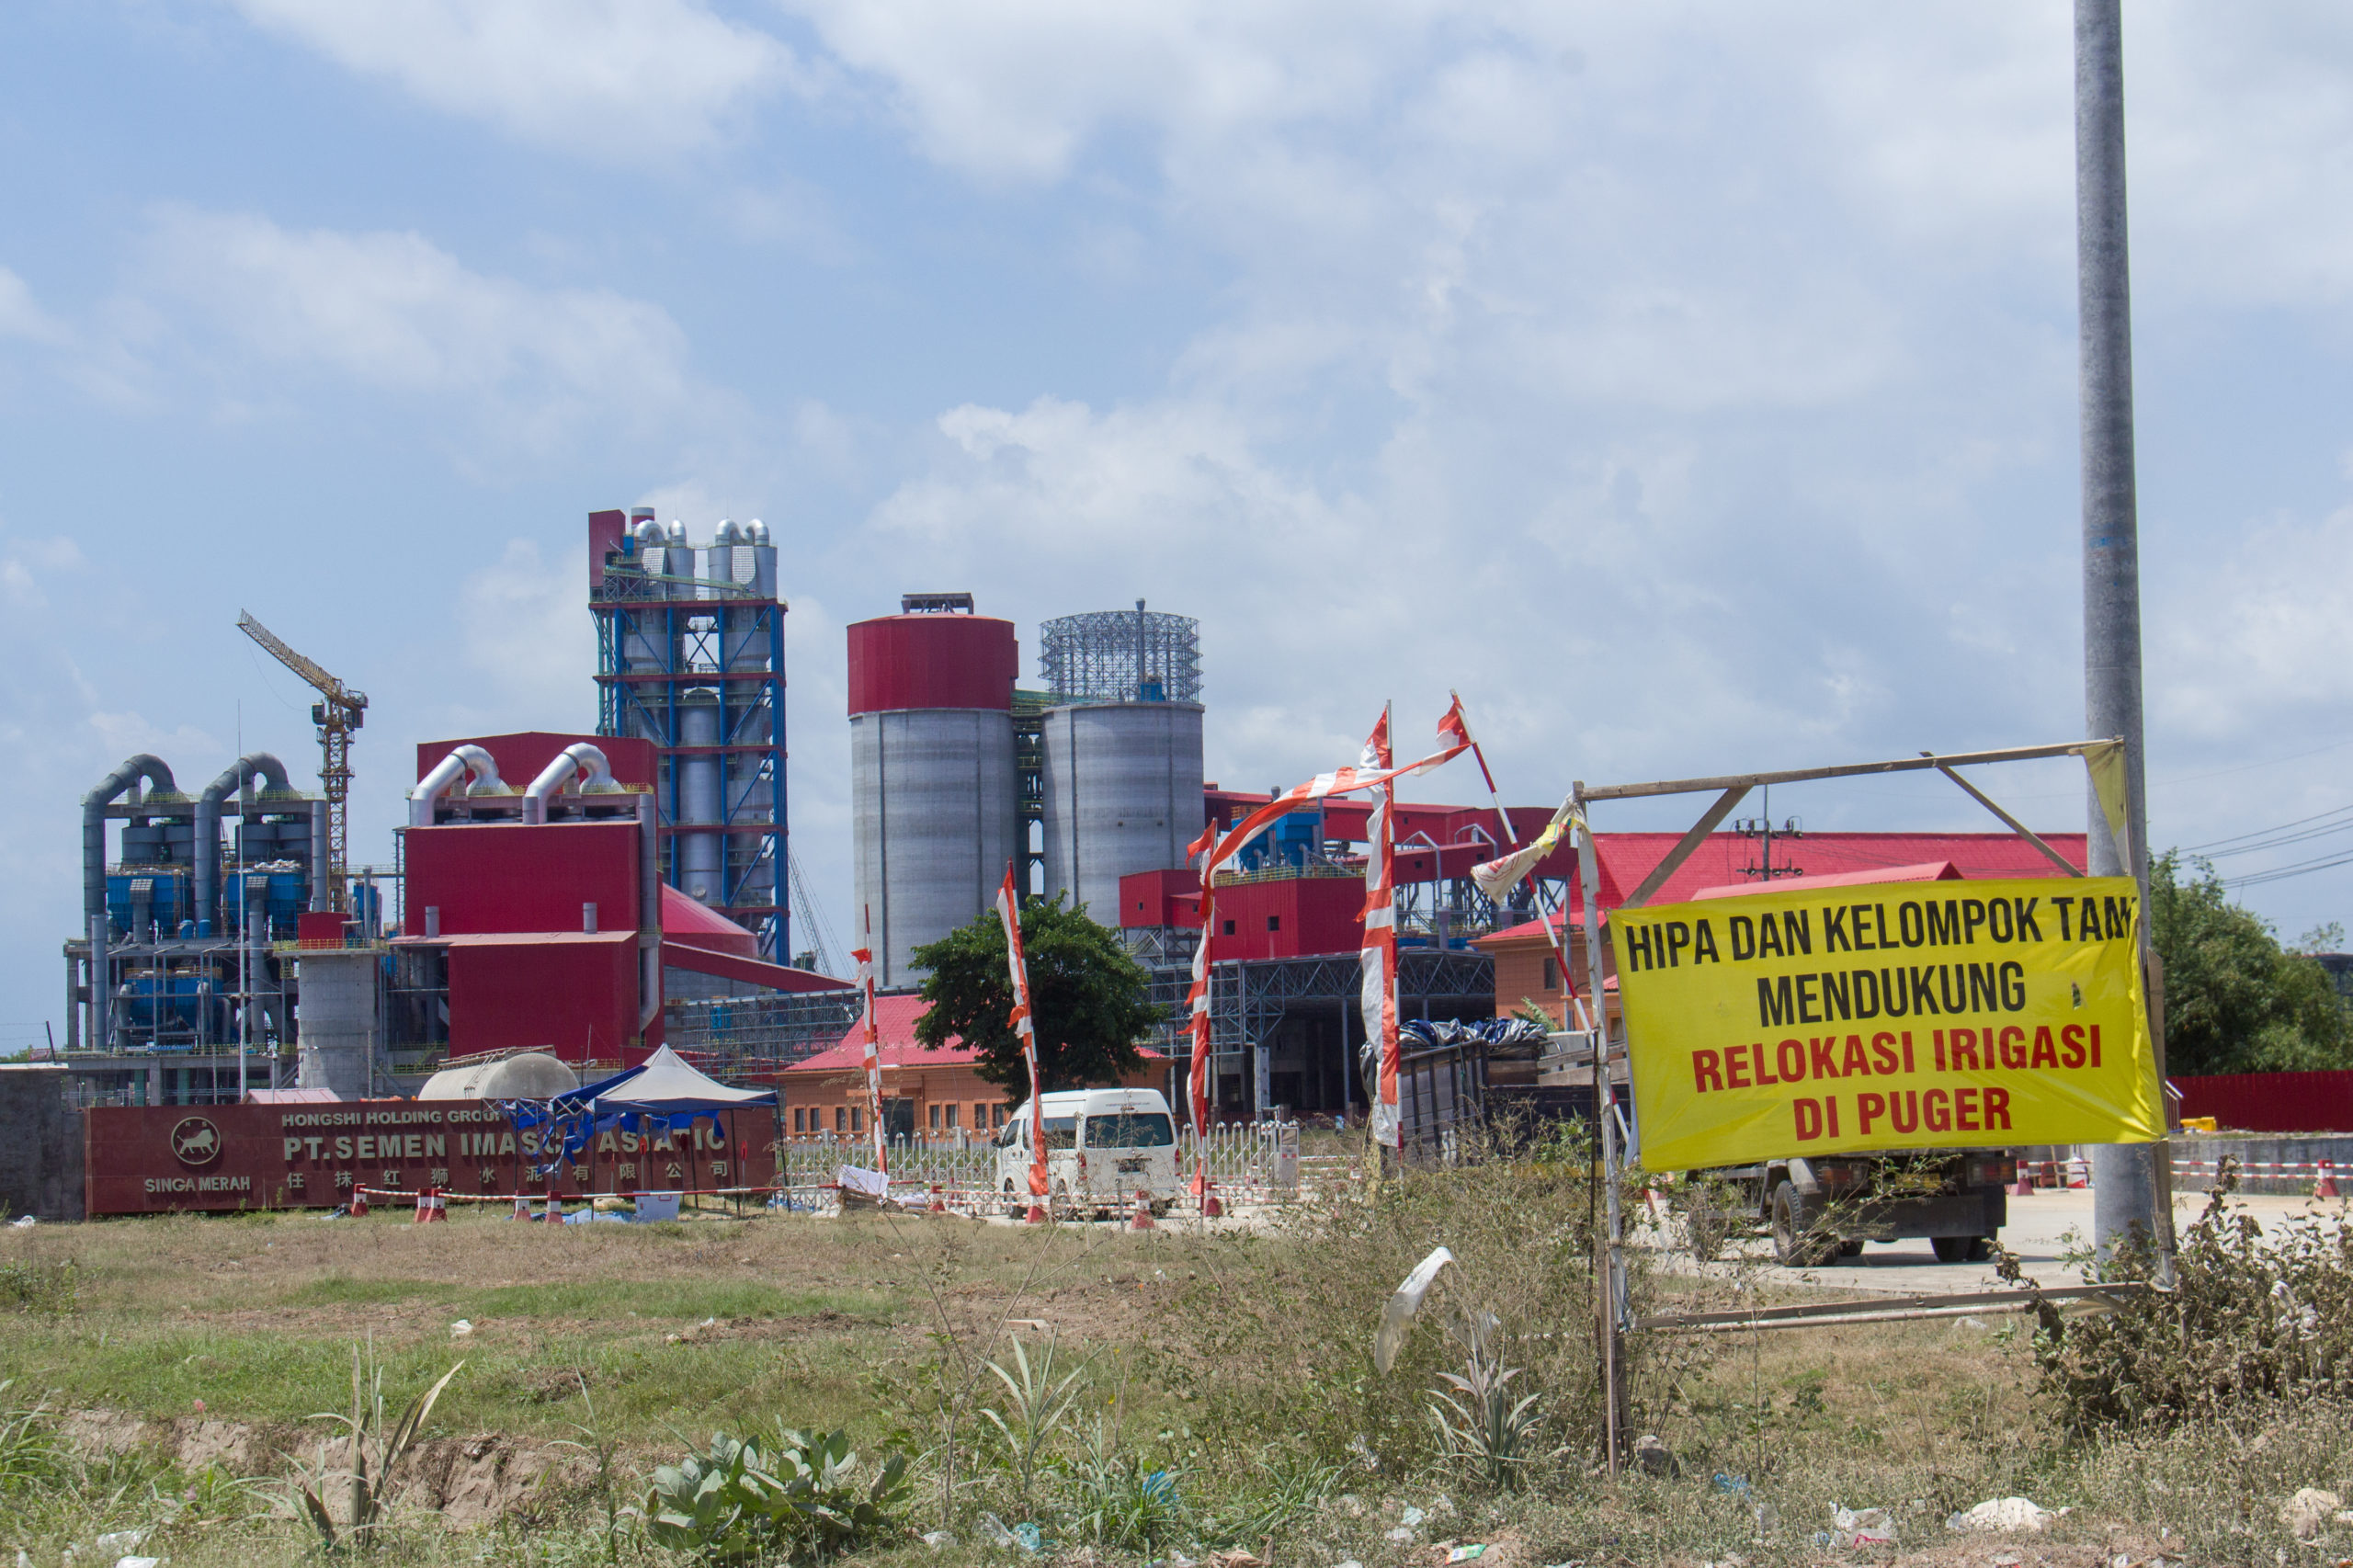 Petani prorelokasi saluran air memasang banner dukungan di areal pabrik semen. Spanduk diambil pada 21 September 2020. Foto: Vj Lie.